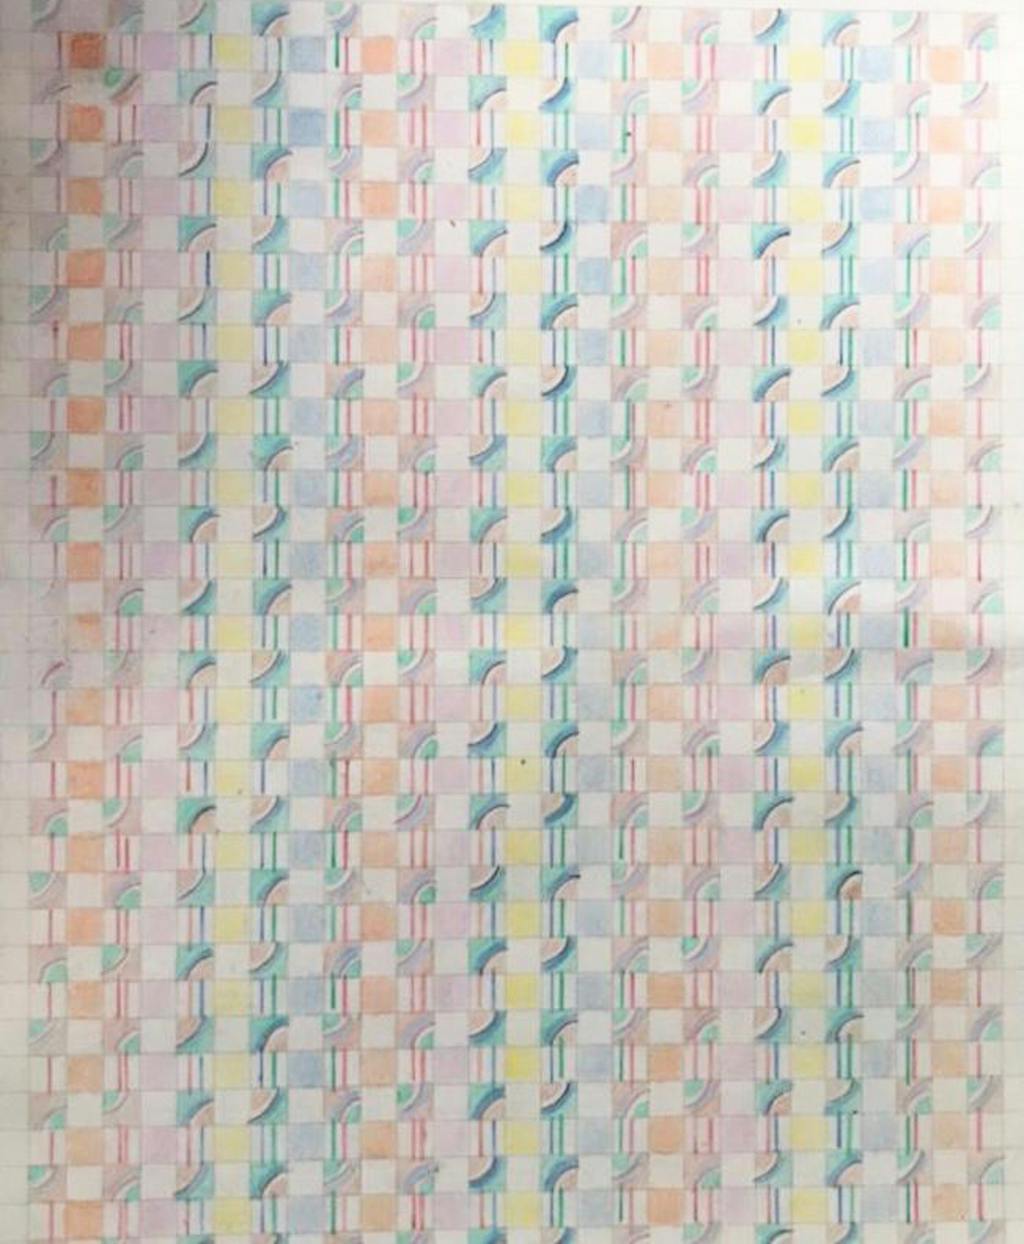 13.08.22, 2022, color pencil on paper, 24.5 x 16 cm - © Courtesy of the artist and Grey Noise, Dubai., Paris Internationale